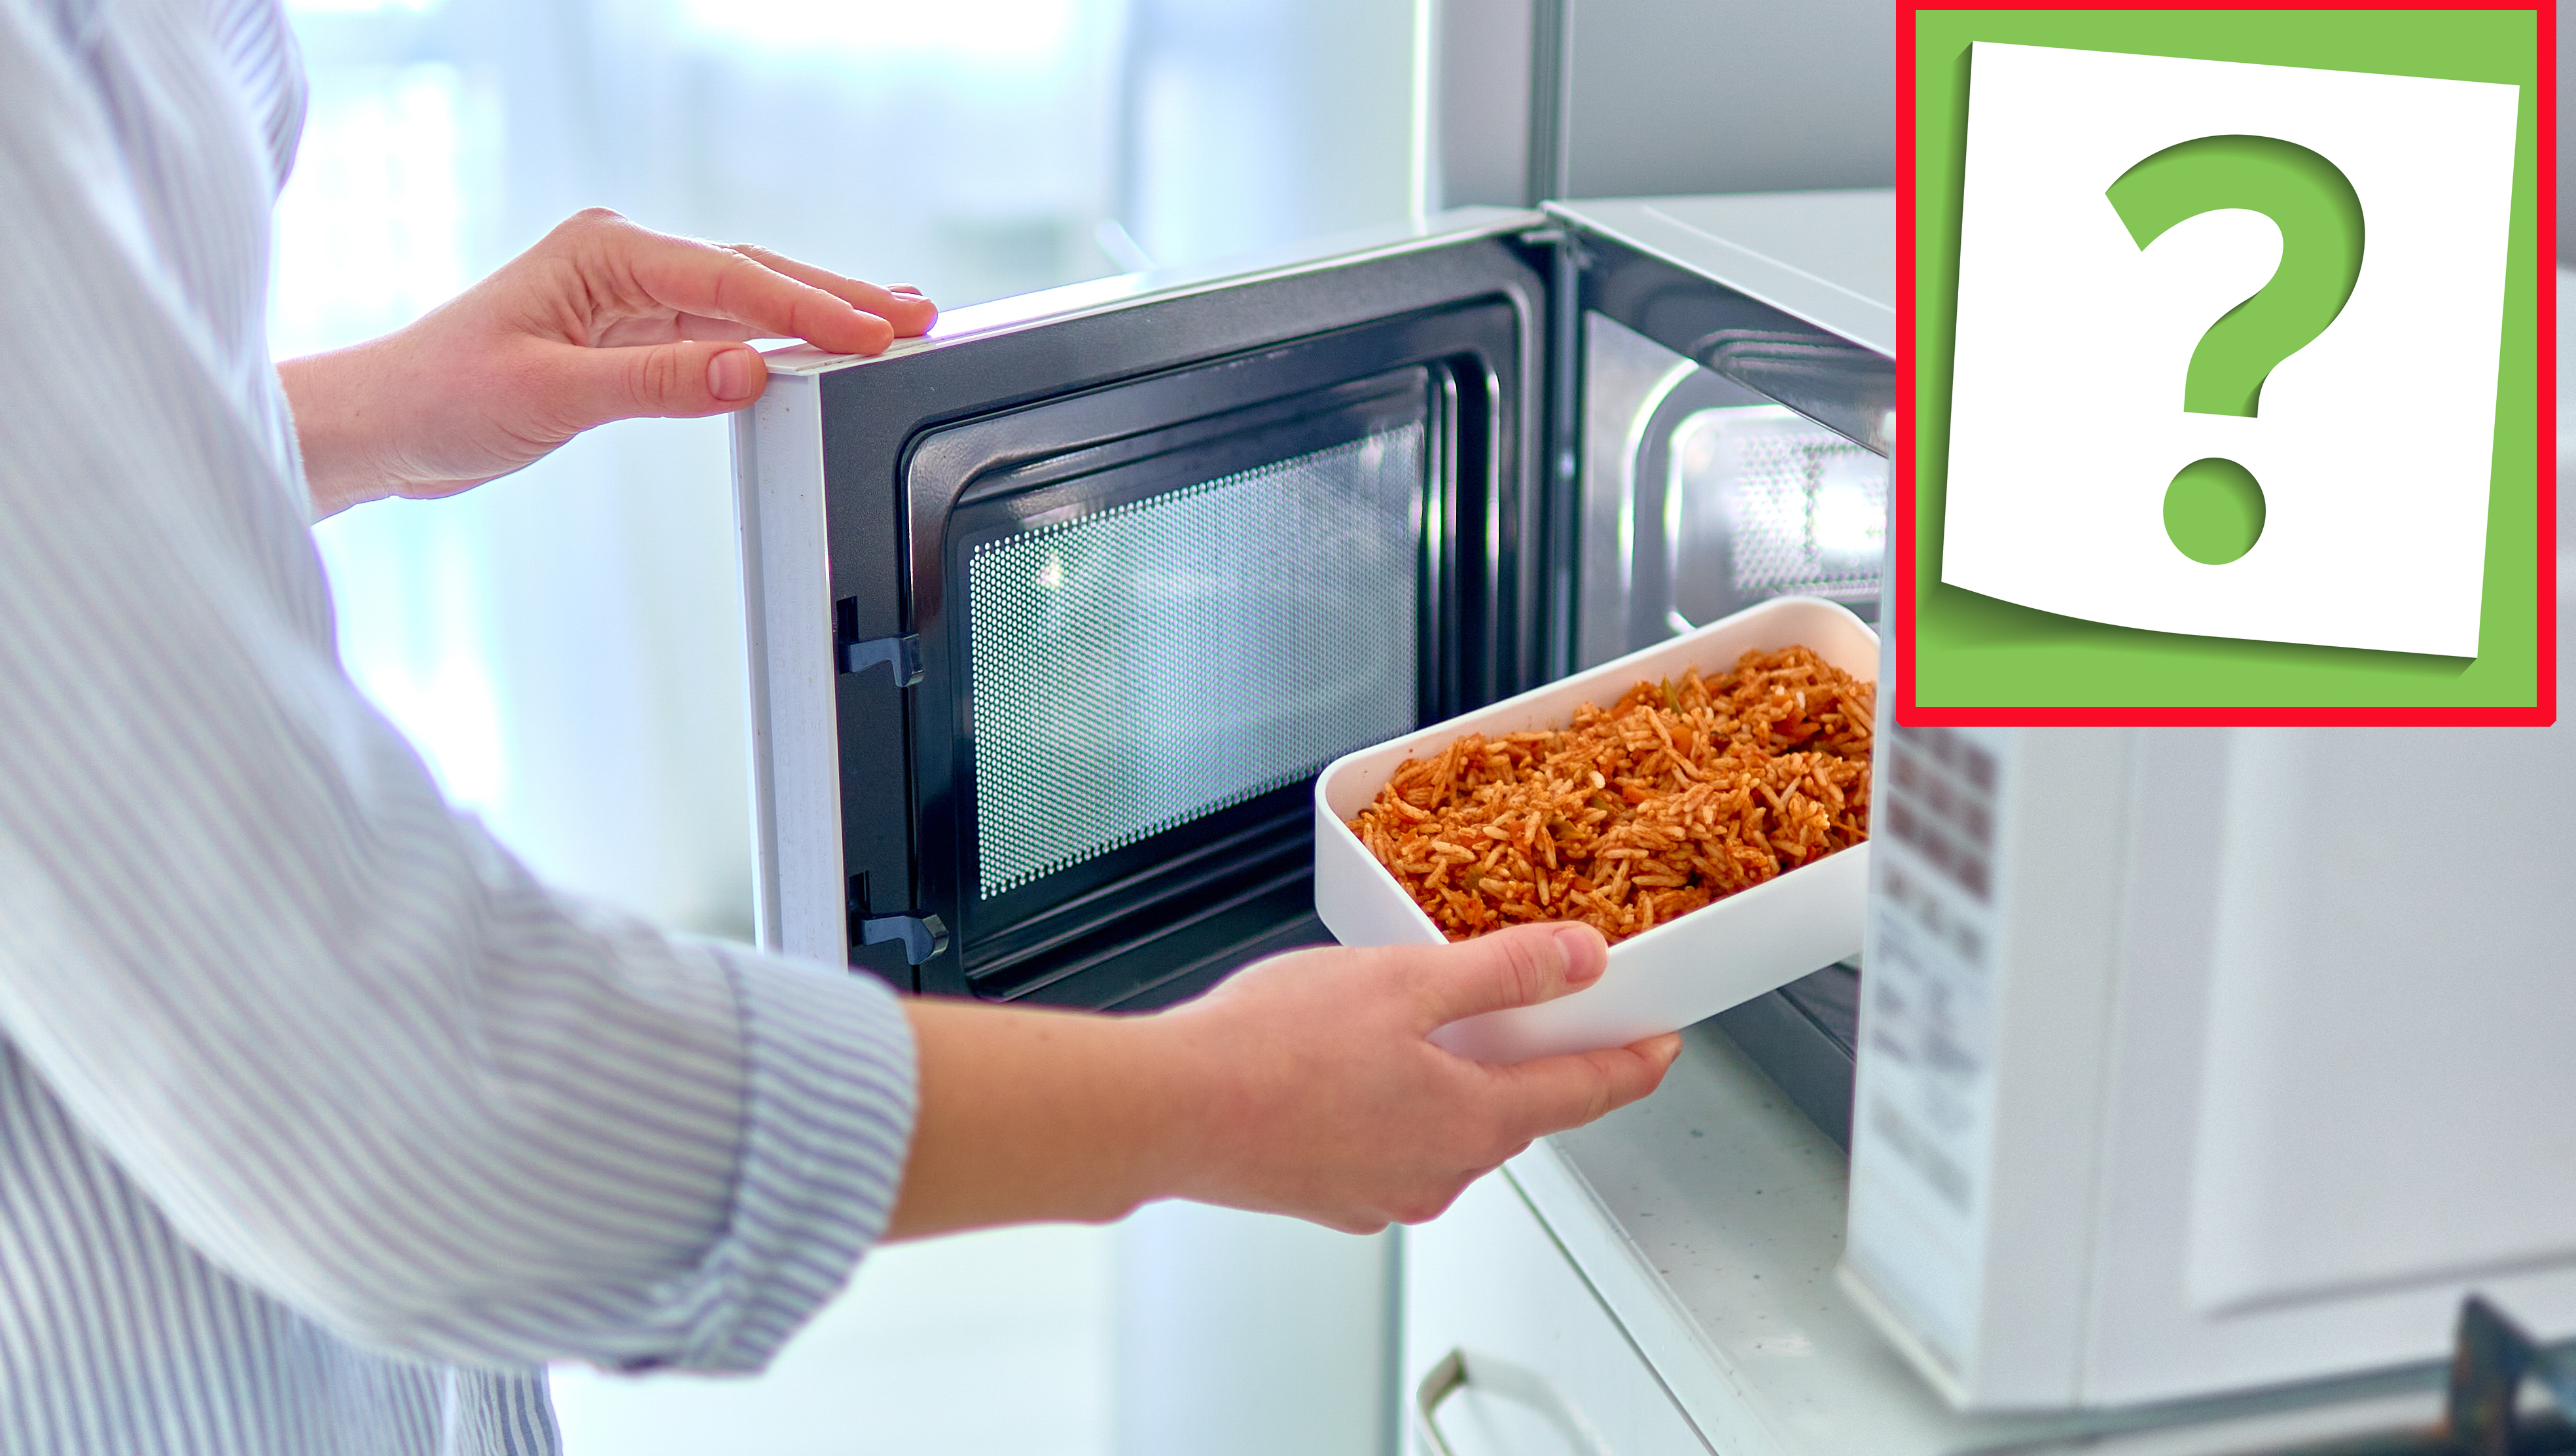 Gyakran műanyagban mikrózod az ételt? A szakértő figyelmeztet: Ezért ne  tedd a kétes minőségű műanyag dobozt a mikróba - kiskegyed.hu